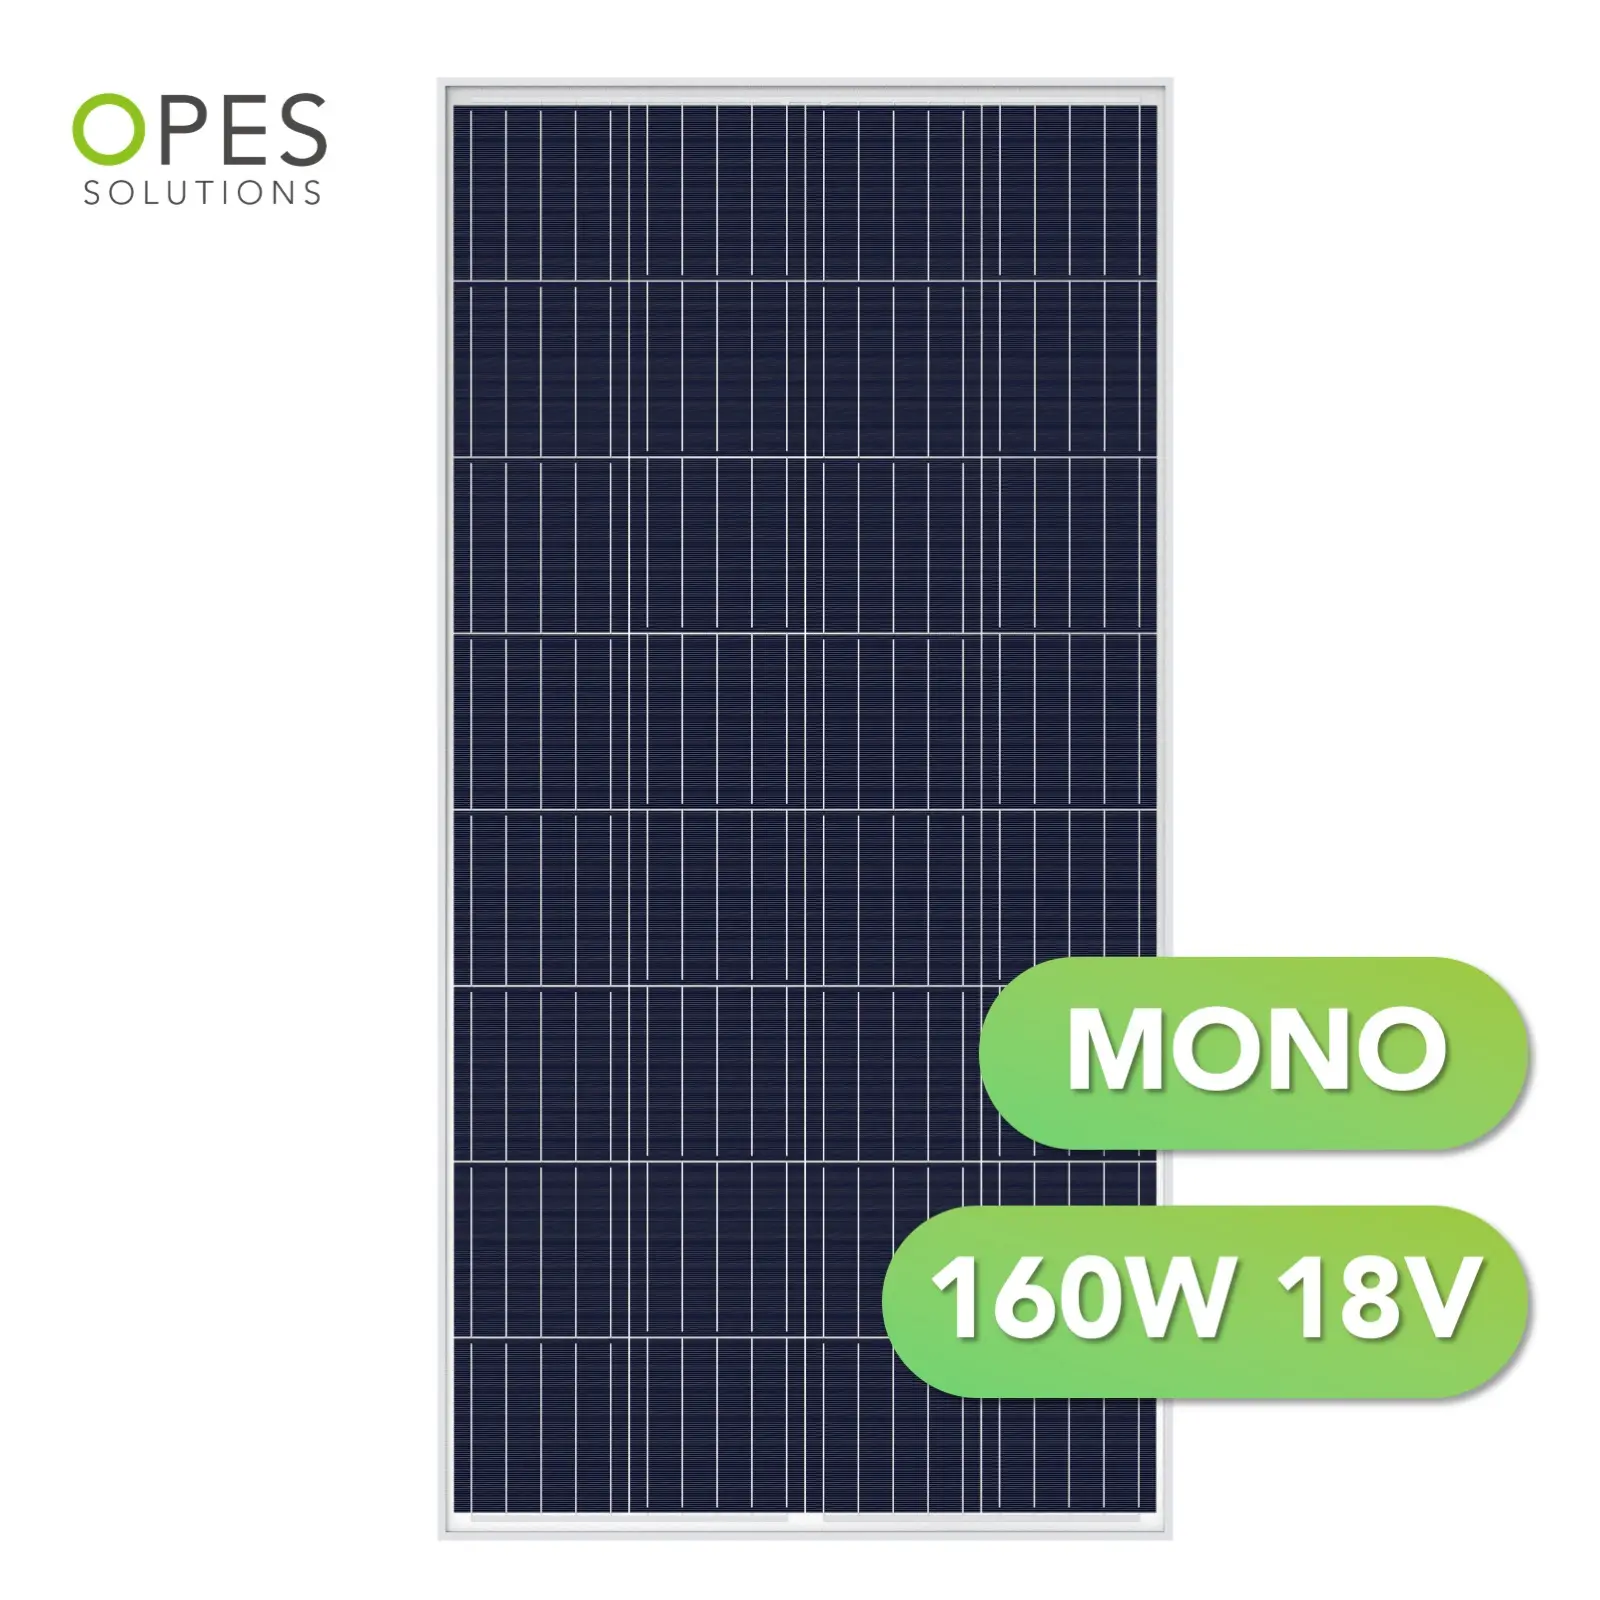 Fornitore su misura 160 watt Mono pannello solare pannello fotovoltaico celle pannello solare